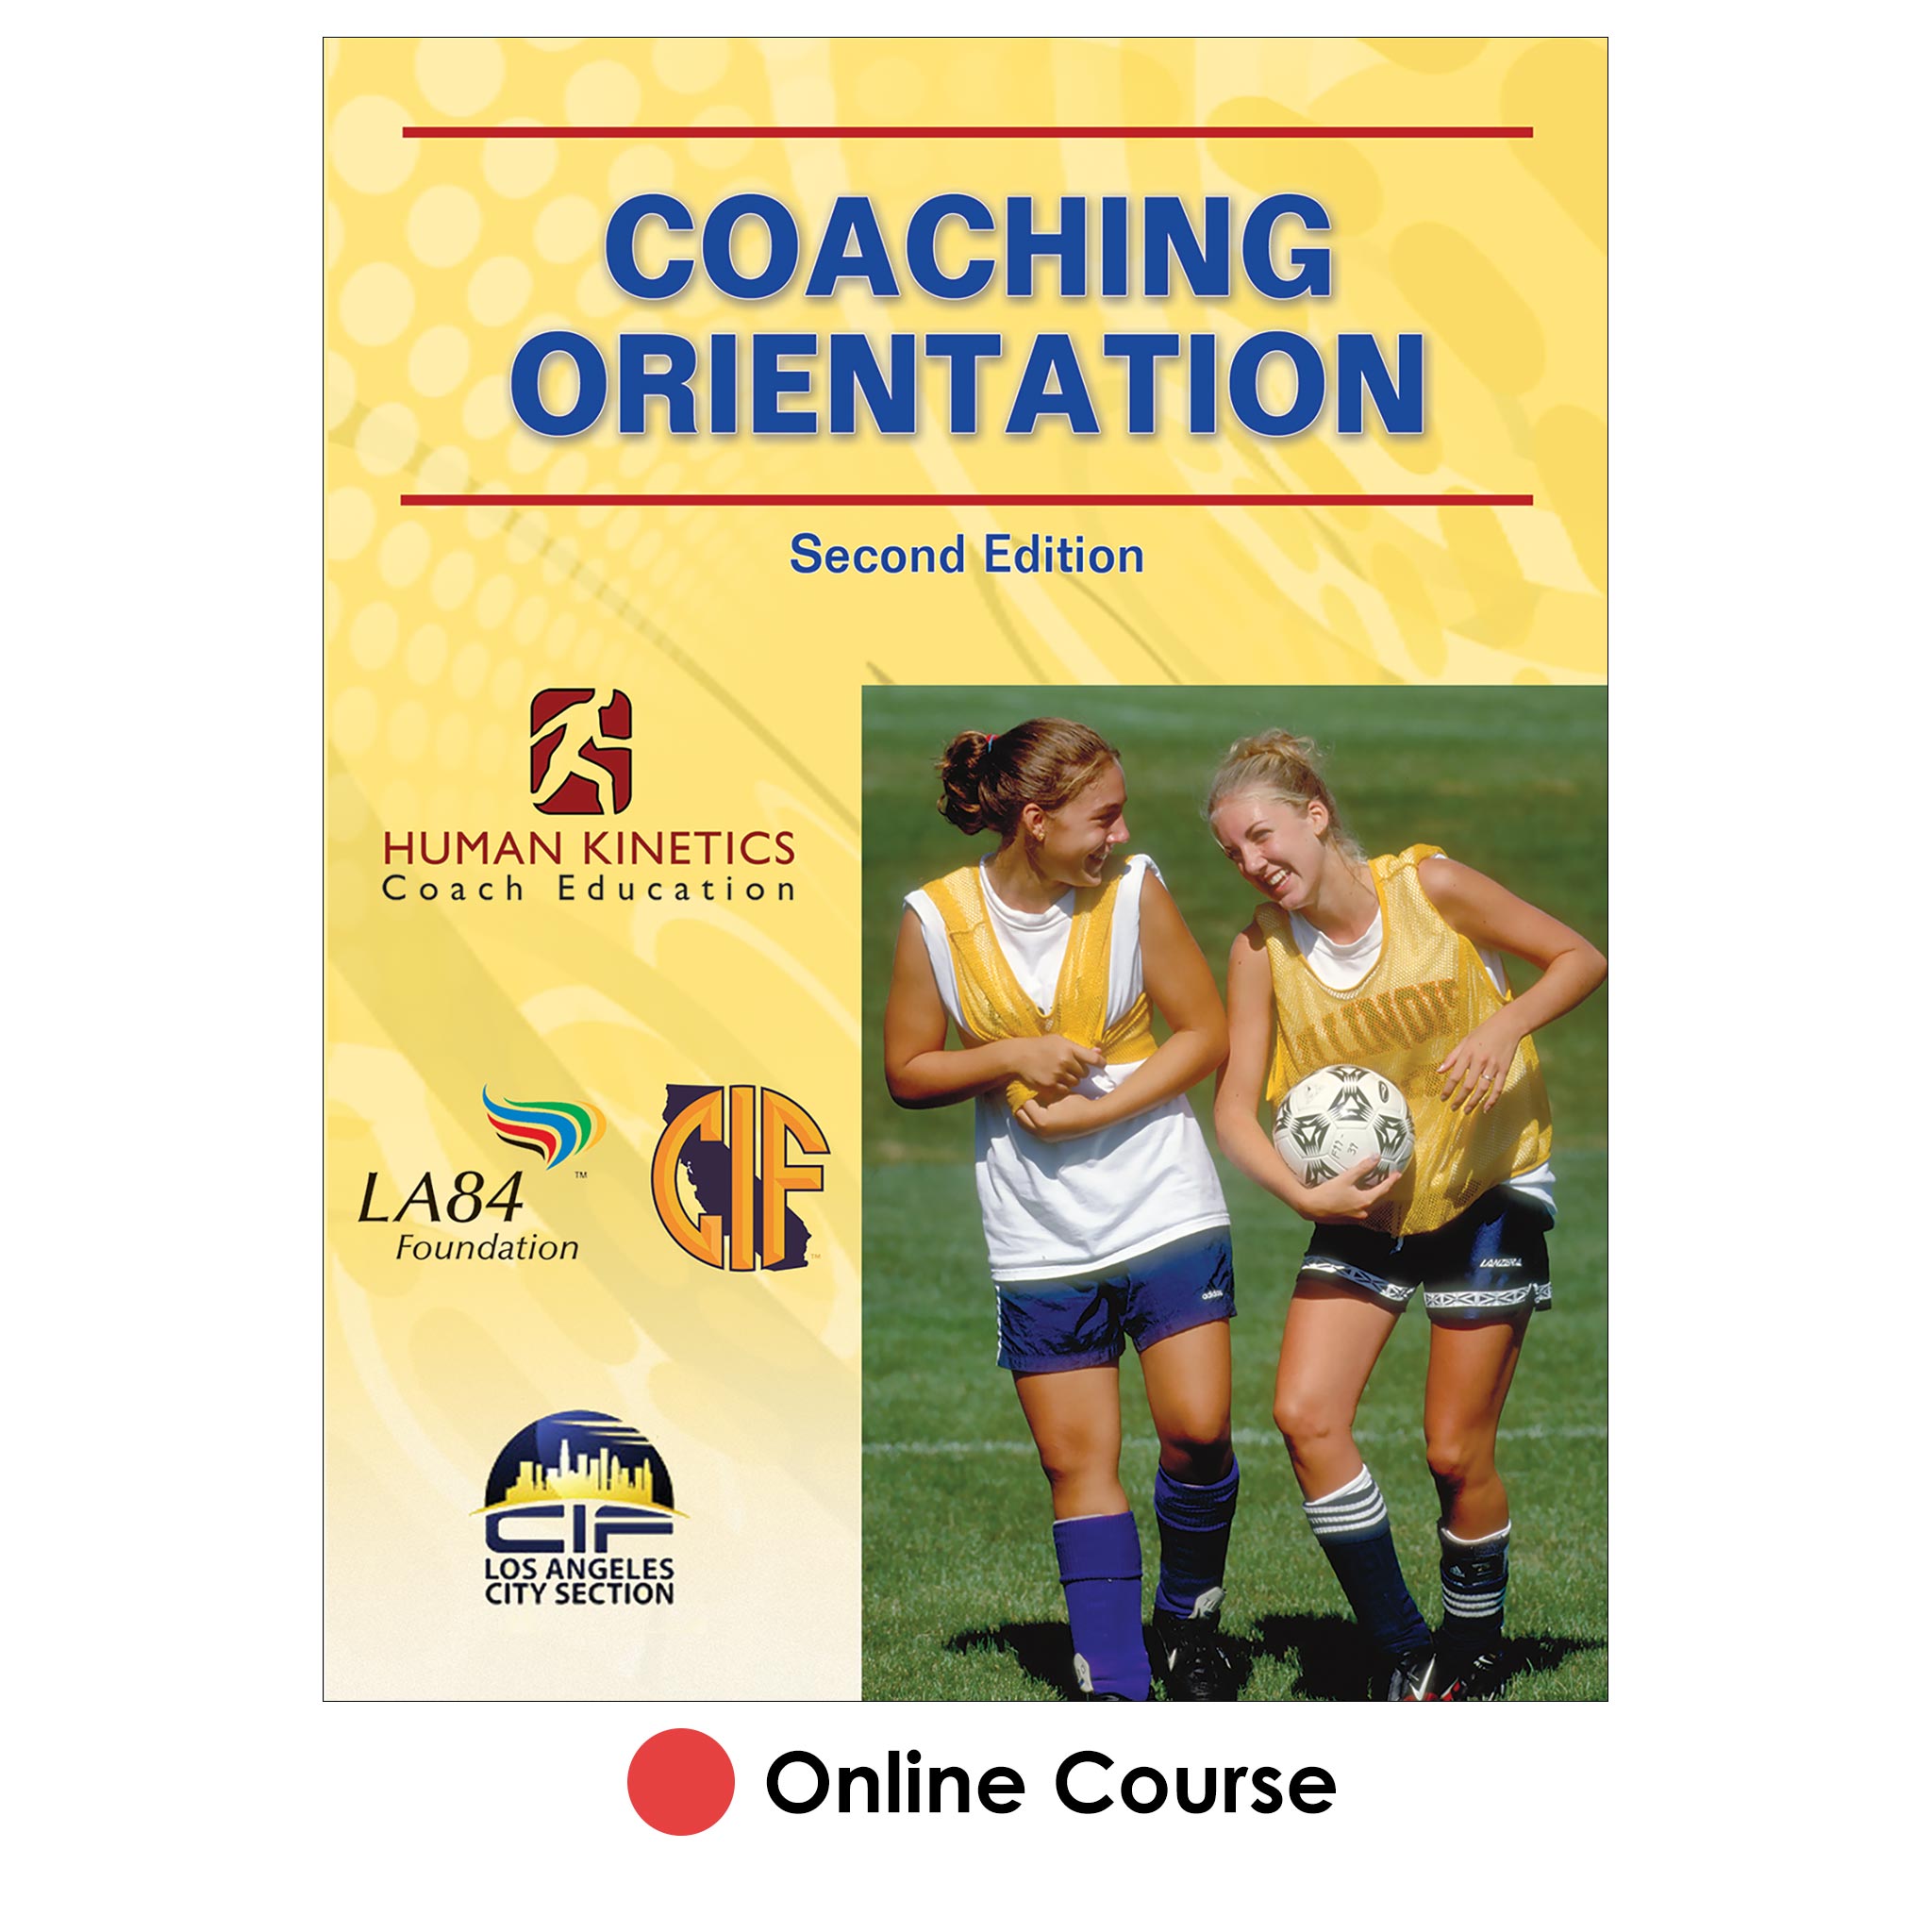 LA84 Foundation CIF LACS Coaching Orientation 2nd Edition Online Course